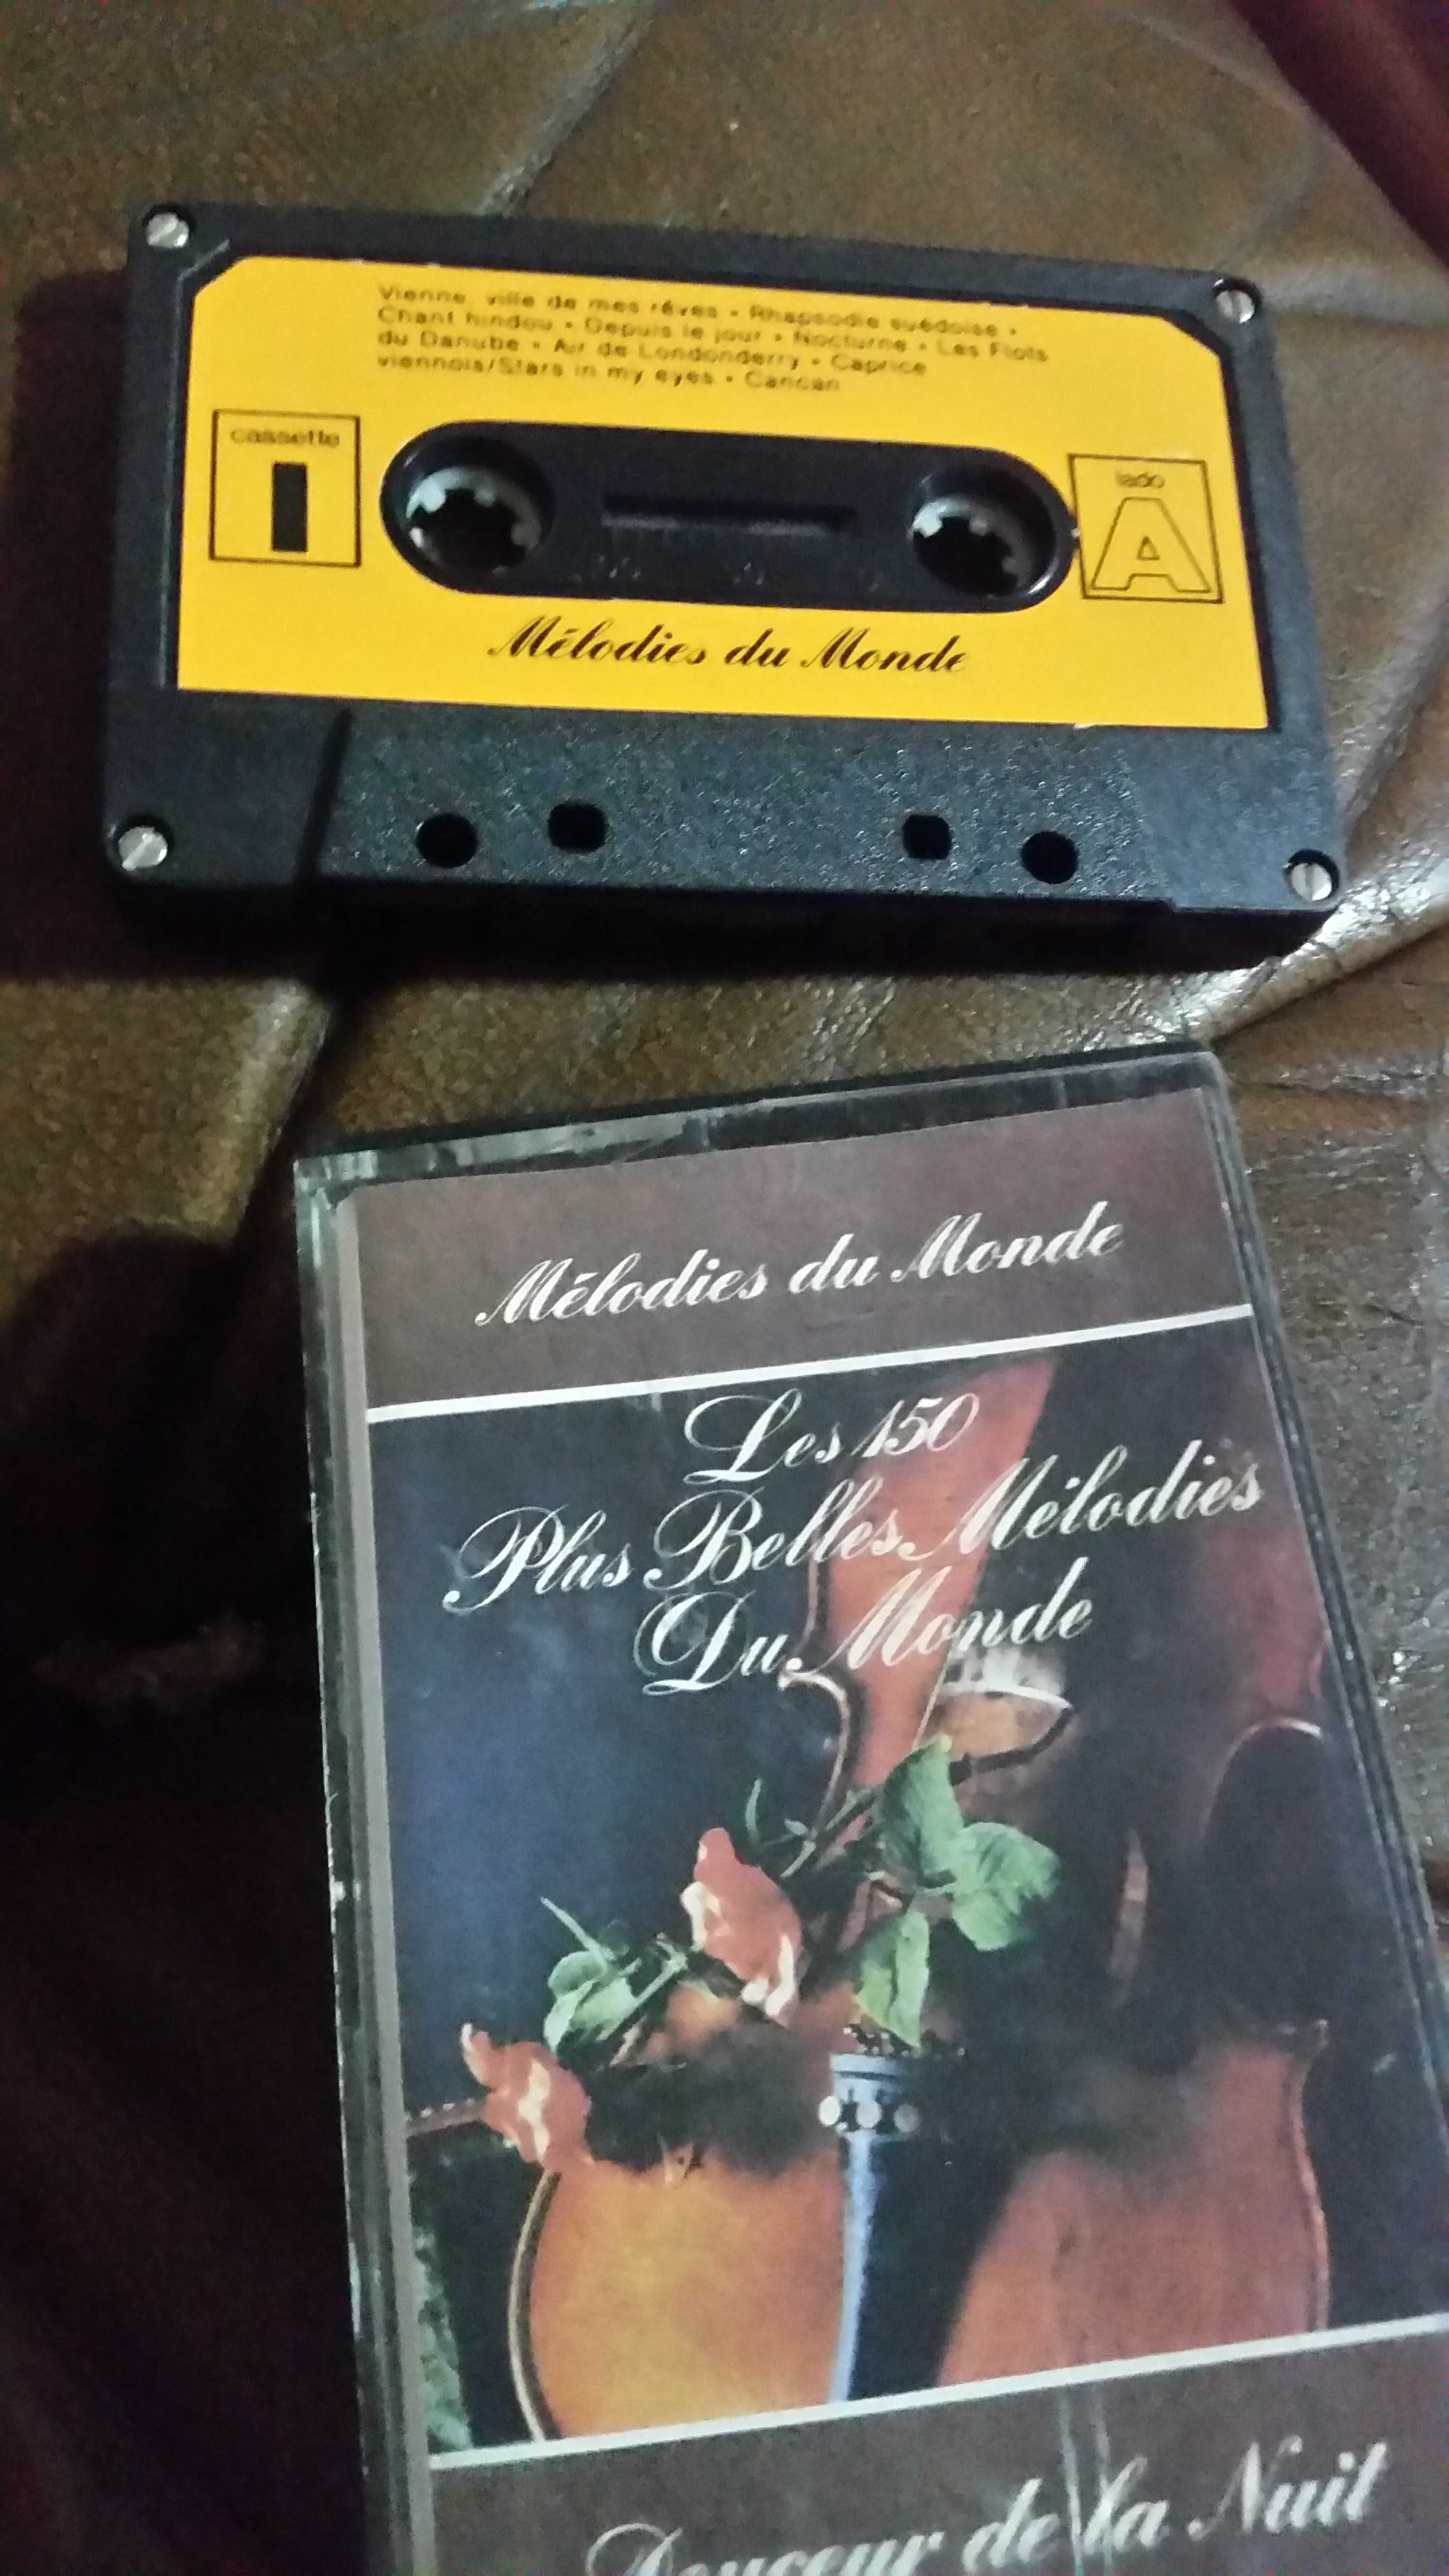 Conjunto de 8 cassetes Melodies du monde